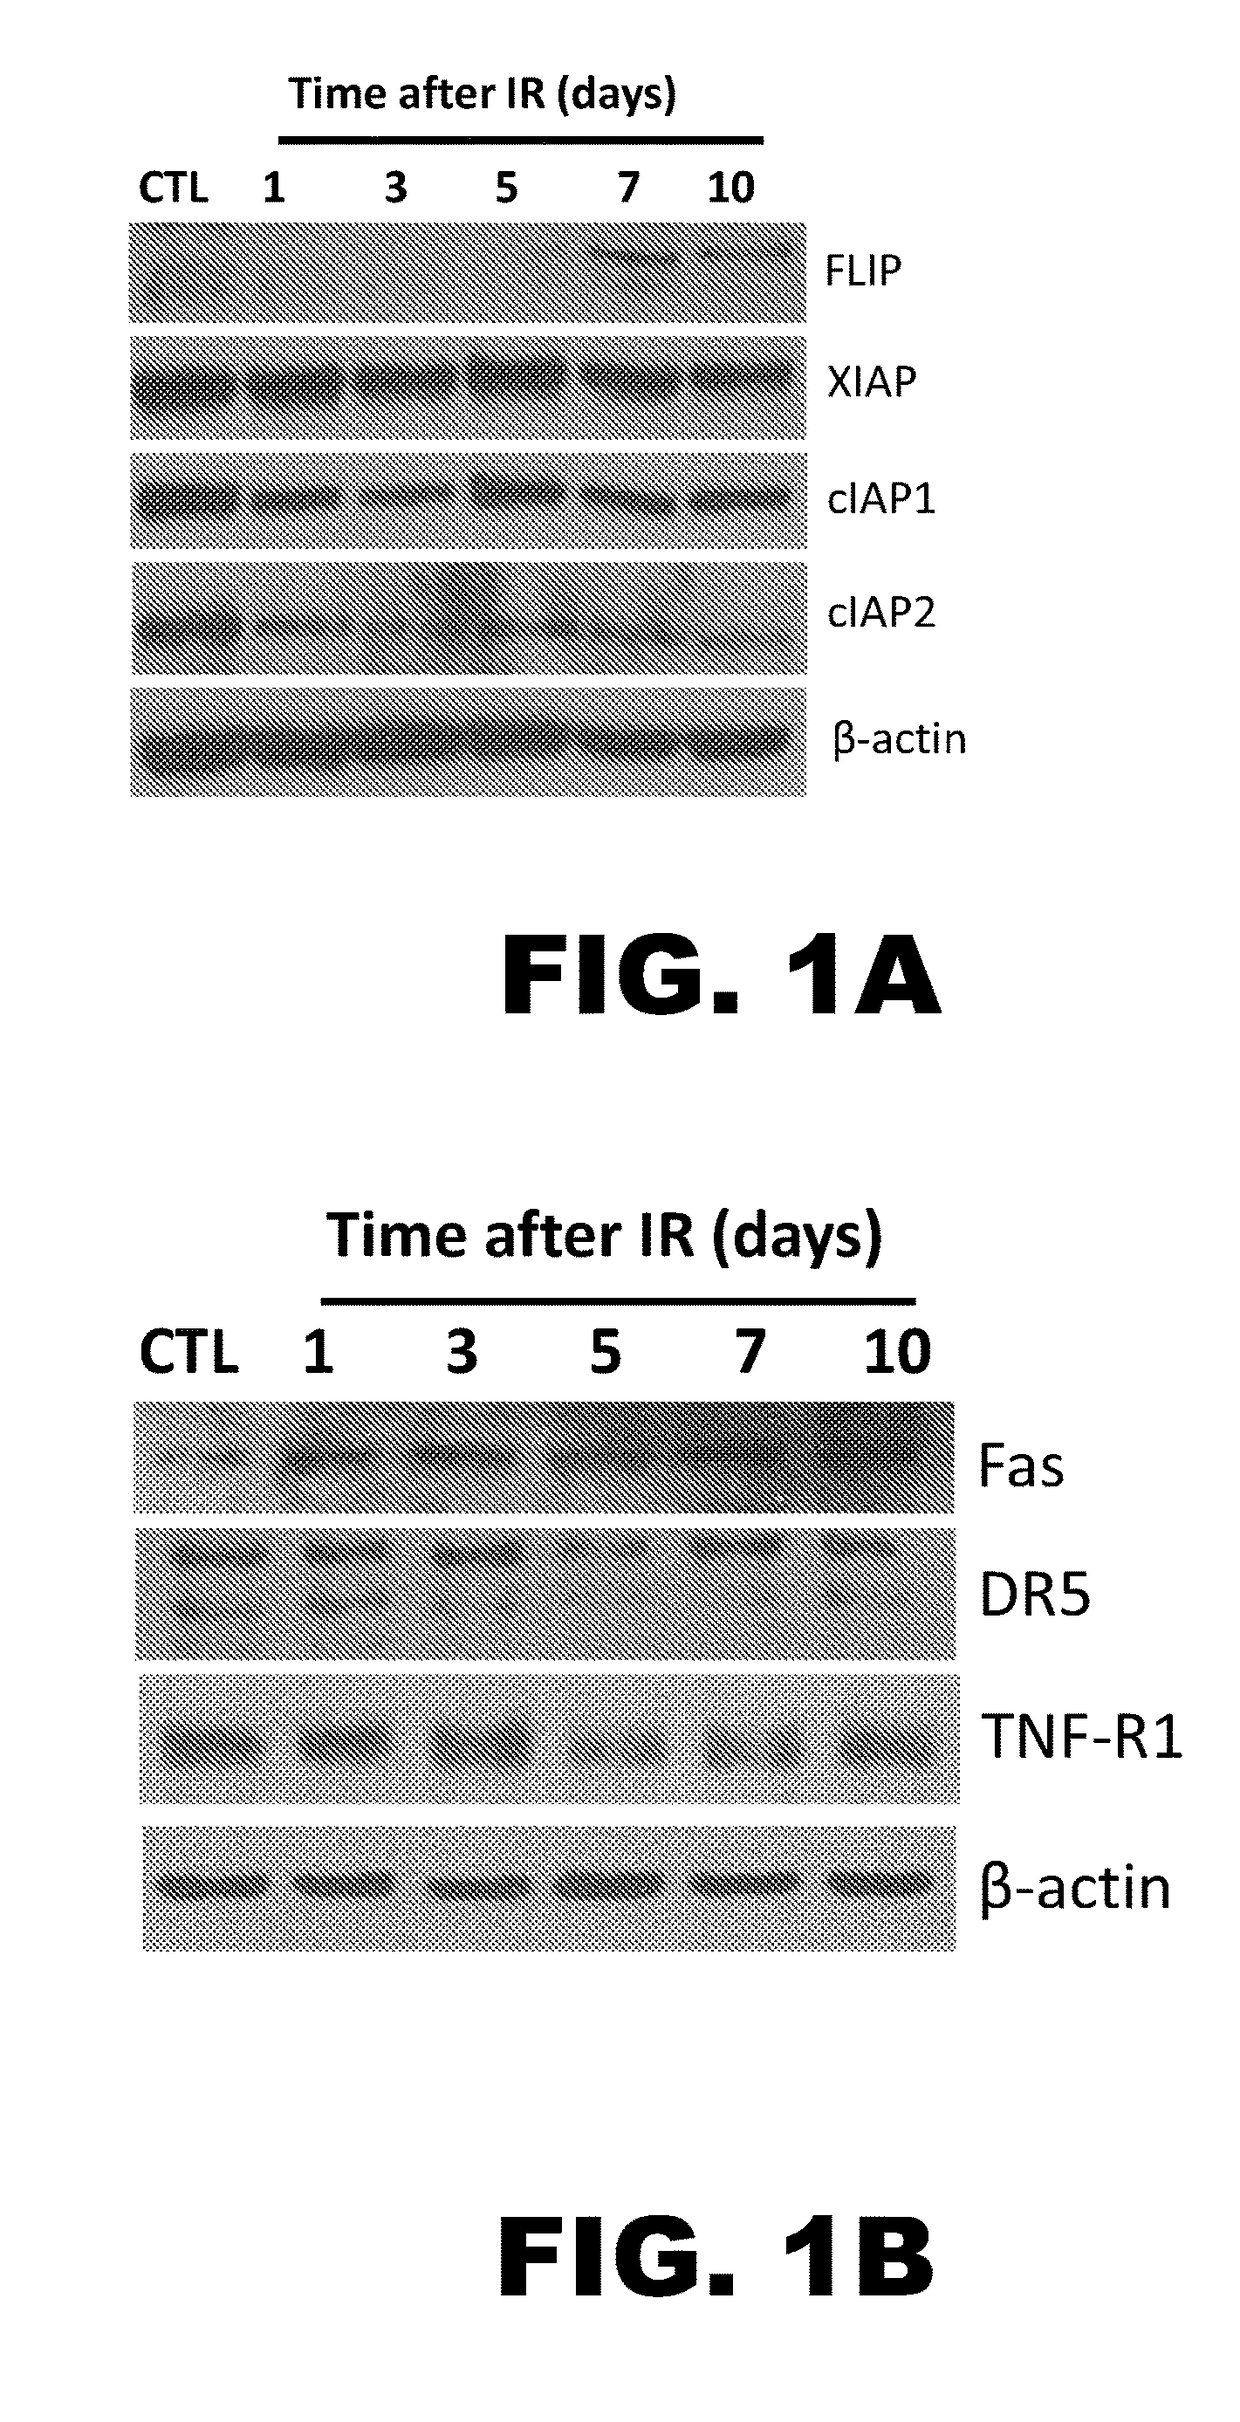 Flip - a selective molecular target of senescent cells